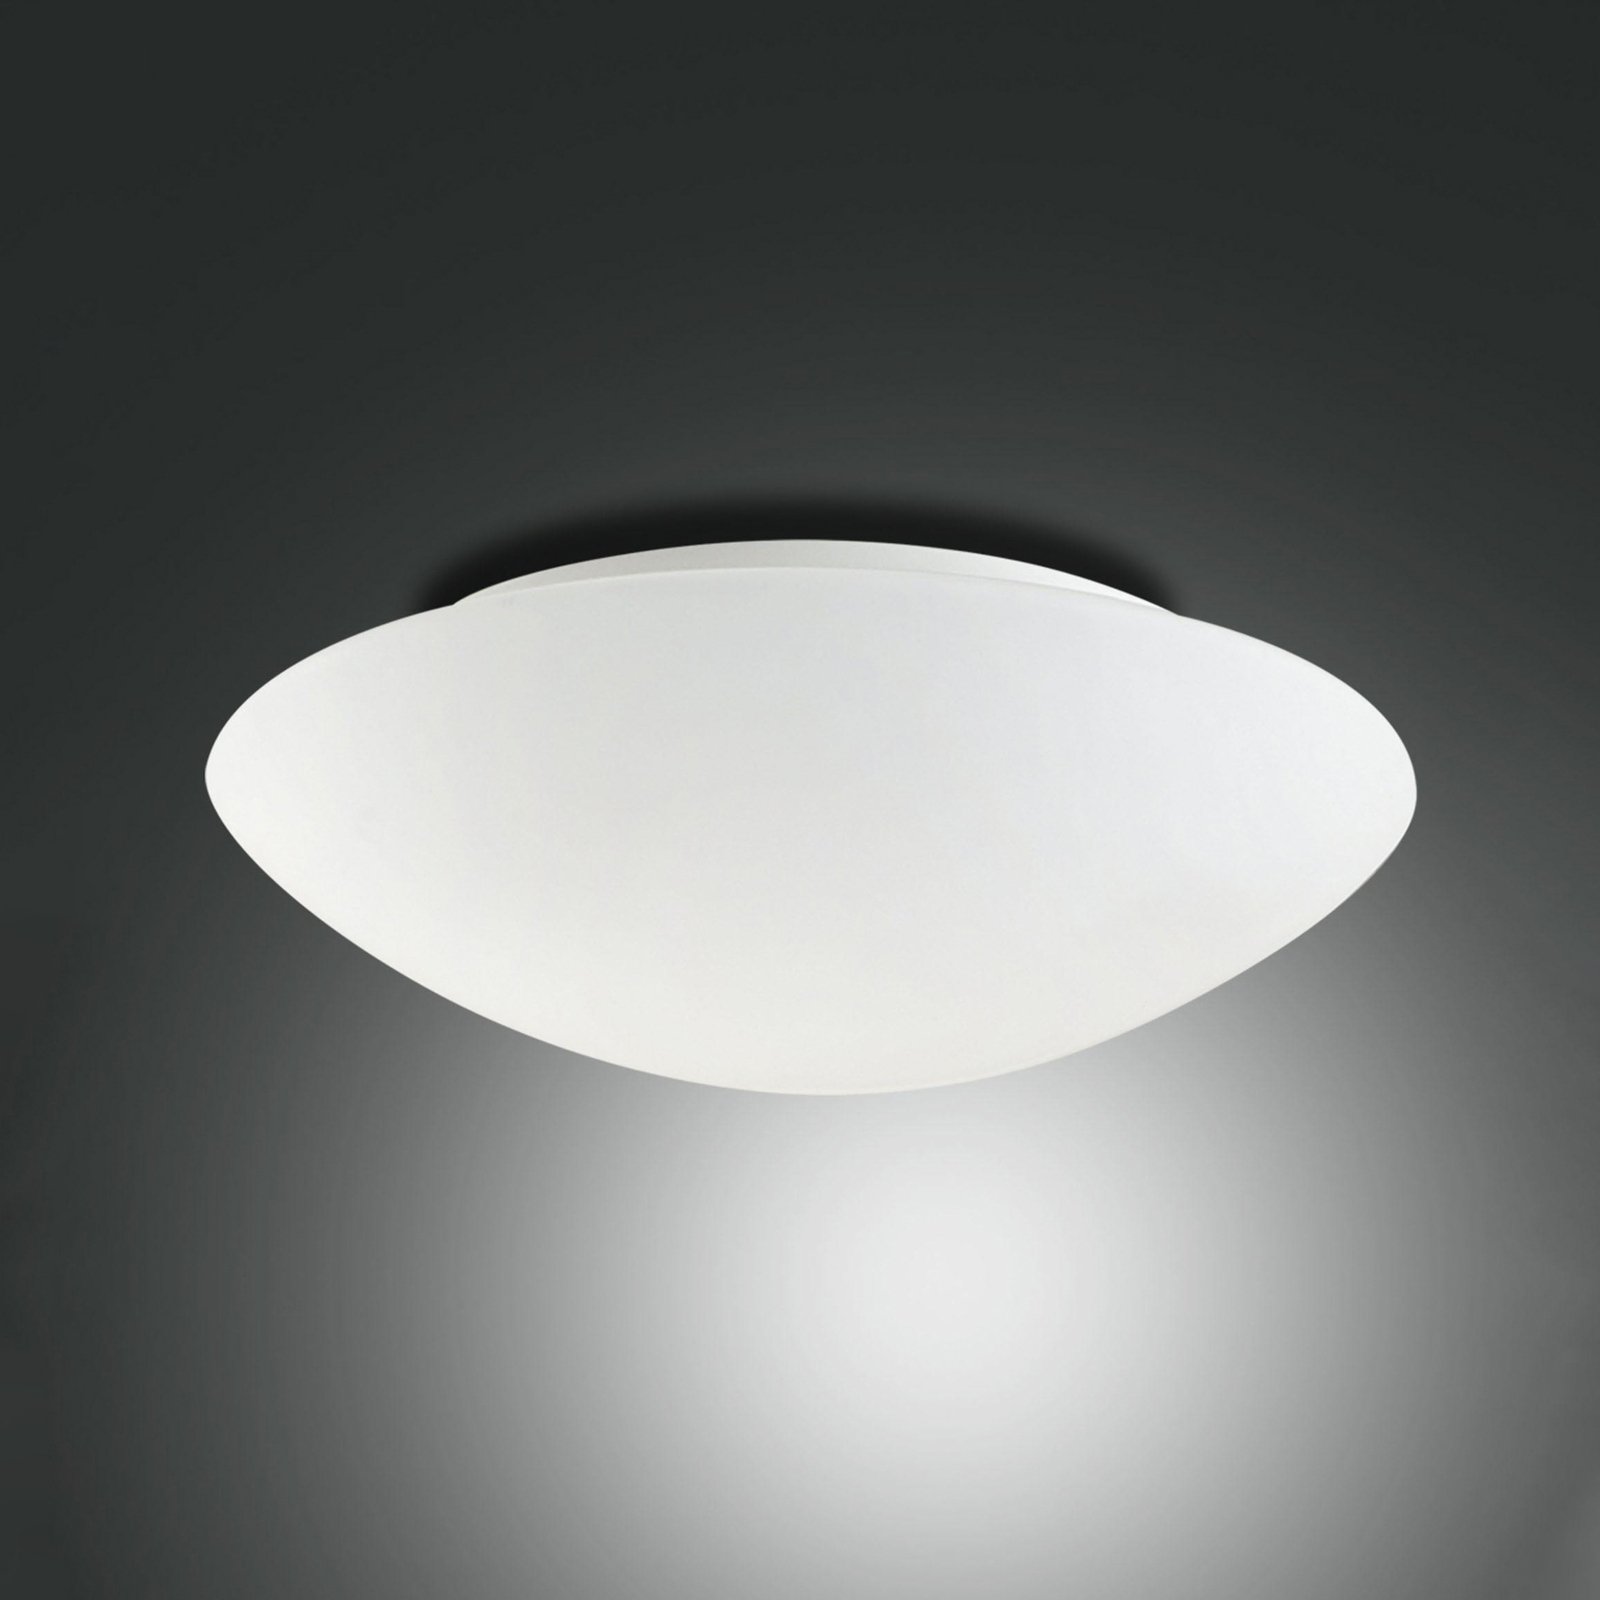 Pandora ceiling light, Ø 46 cm, glass, white